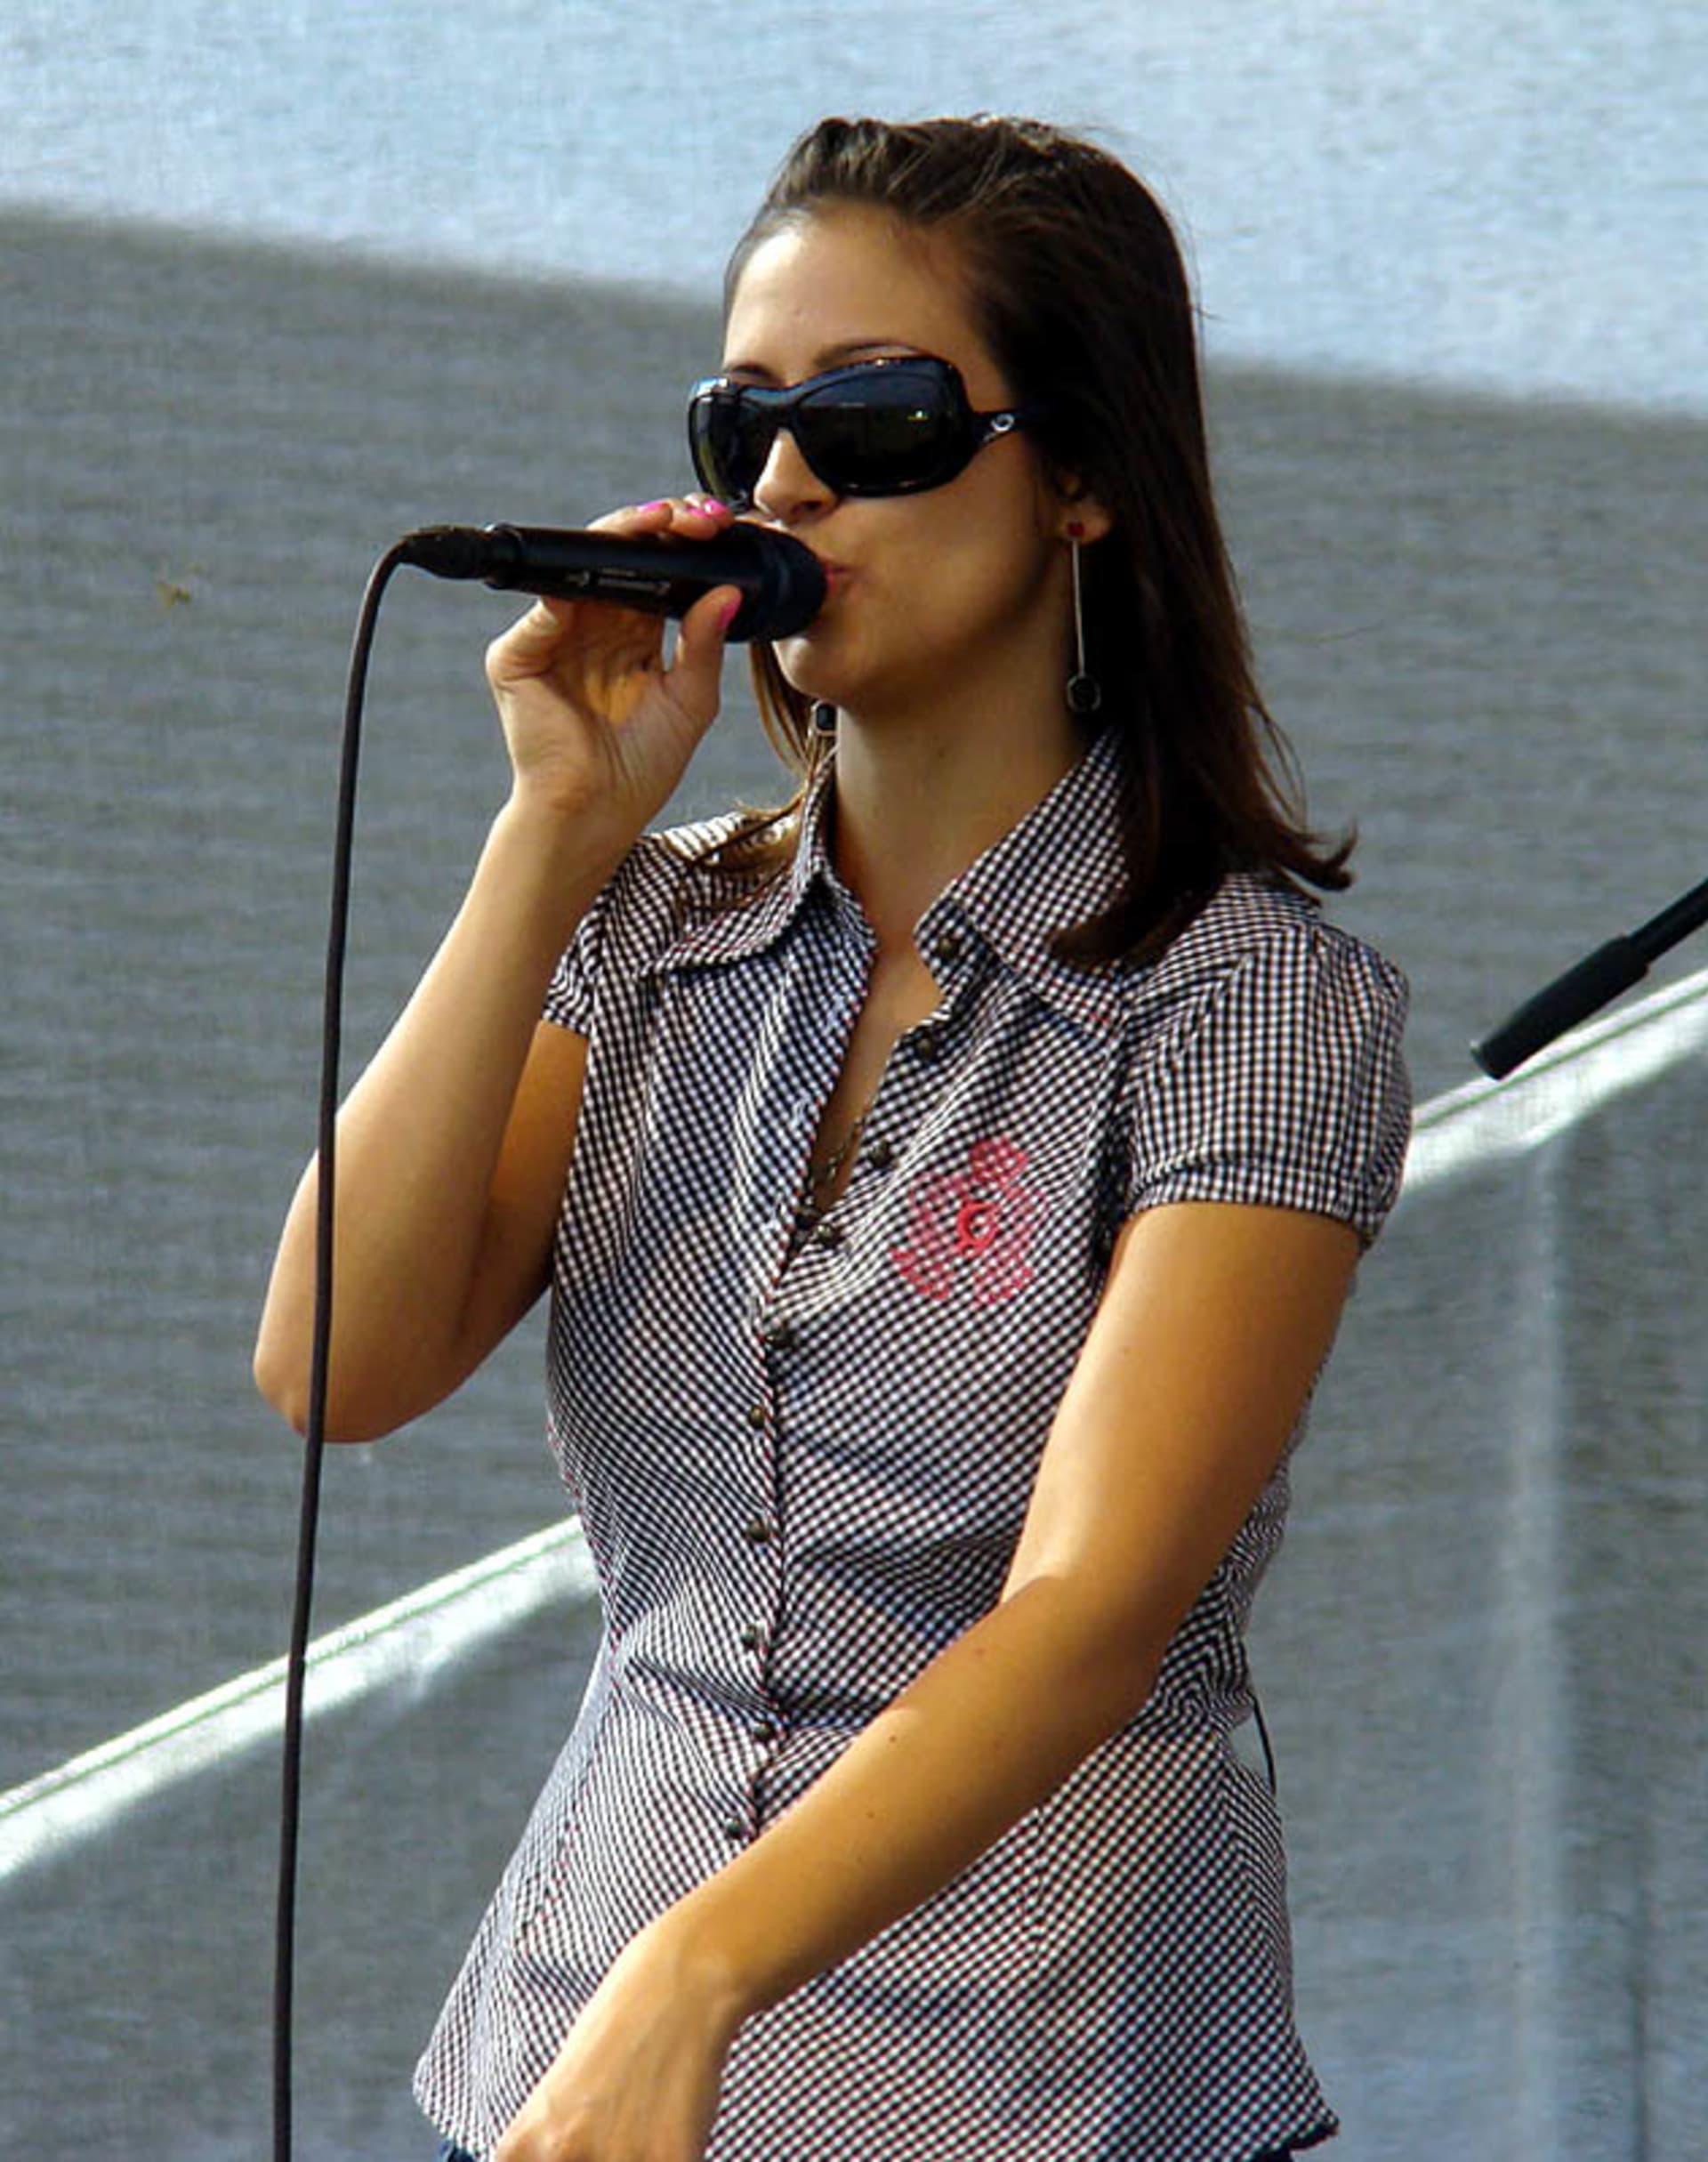 Zdenka Predná (Profilová fotografie)